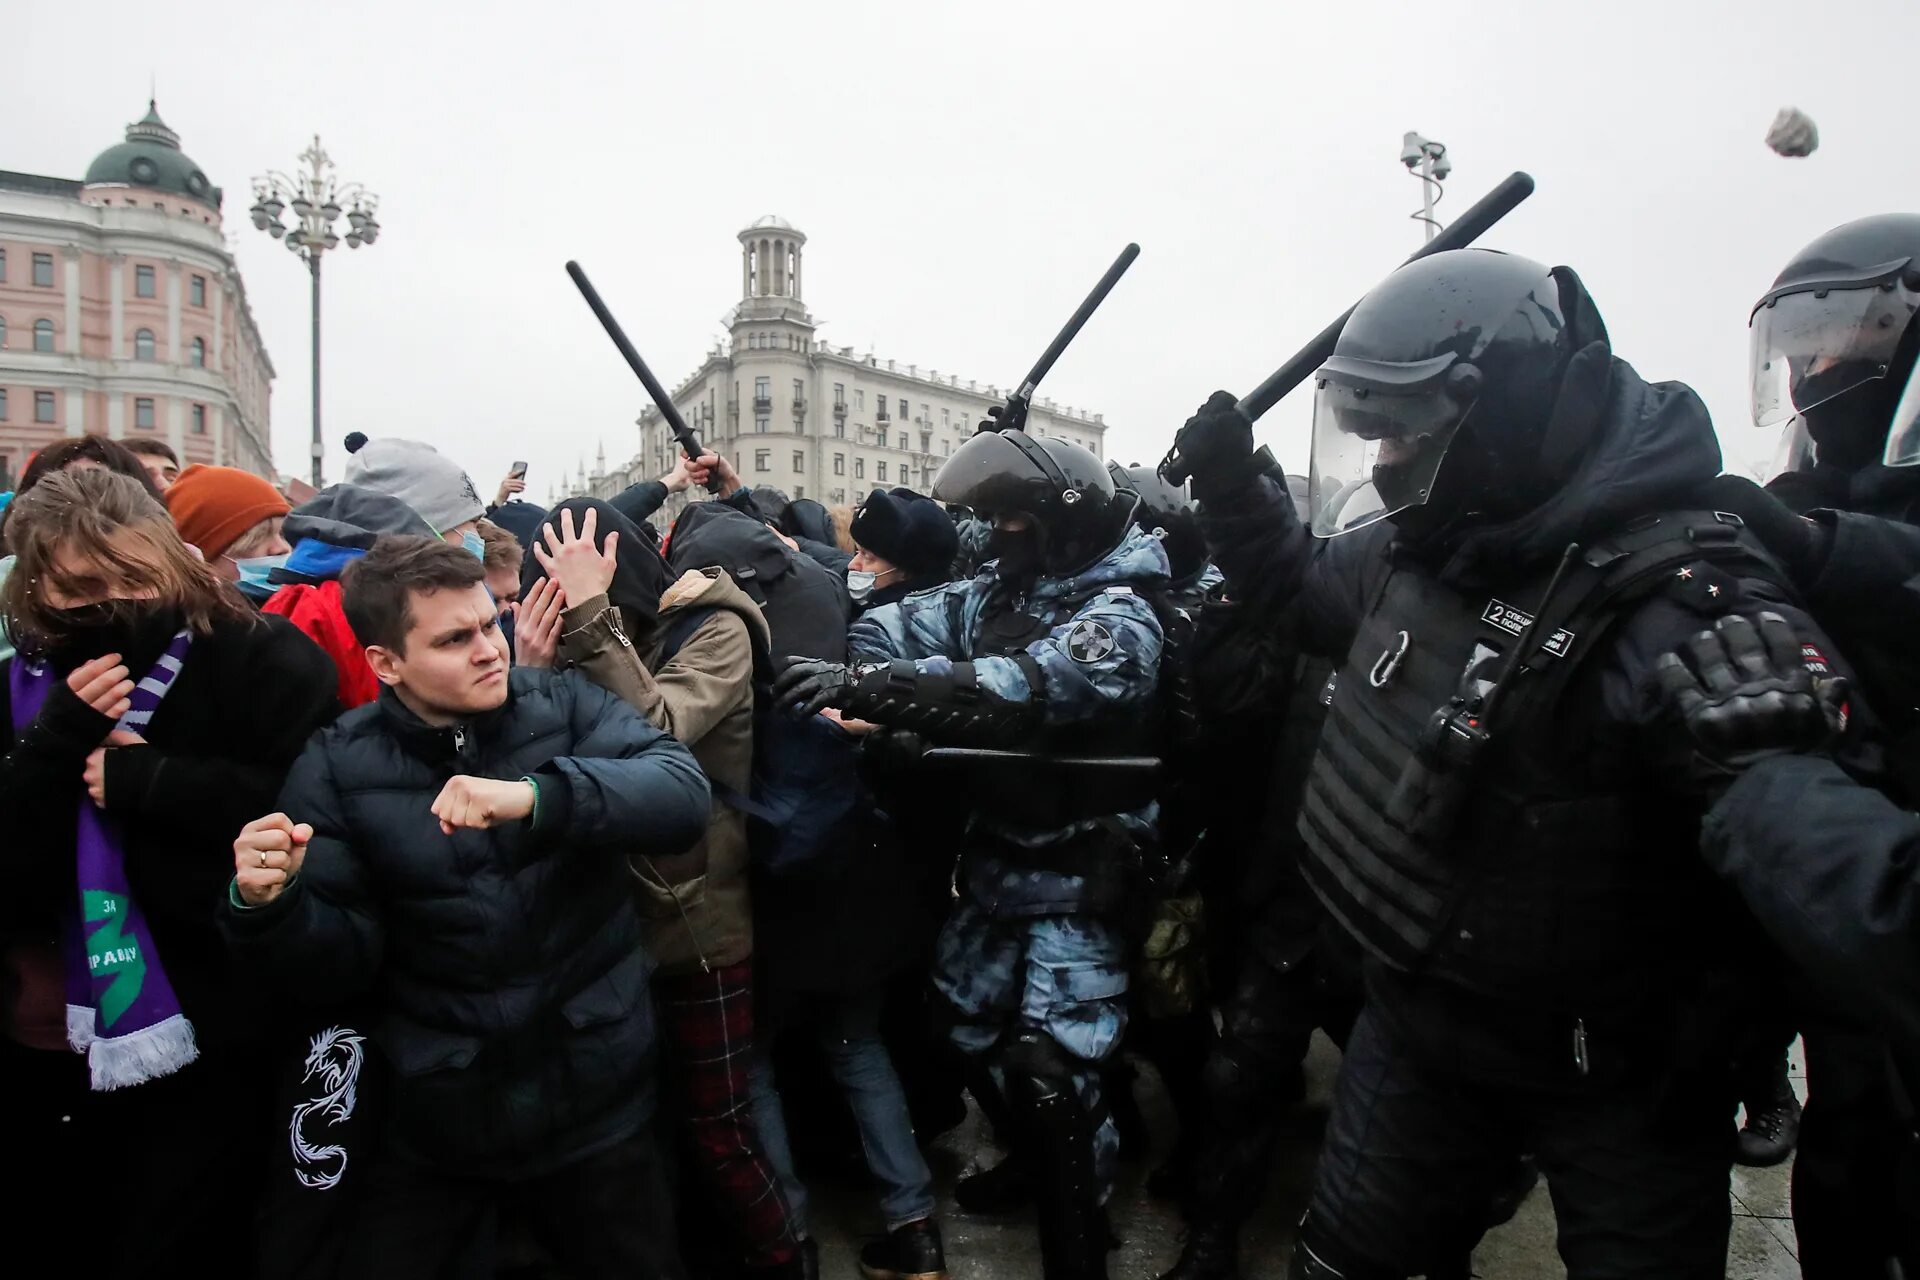 Митинг Навального 2021 в Москве. Митинги в России 2021 Навальный. Протесты в России. Митинг 23 января 2021. Терор сегодня